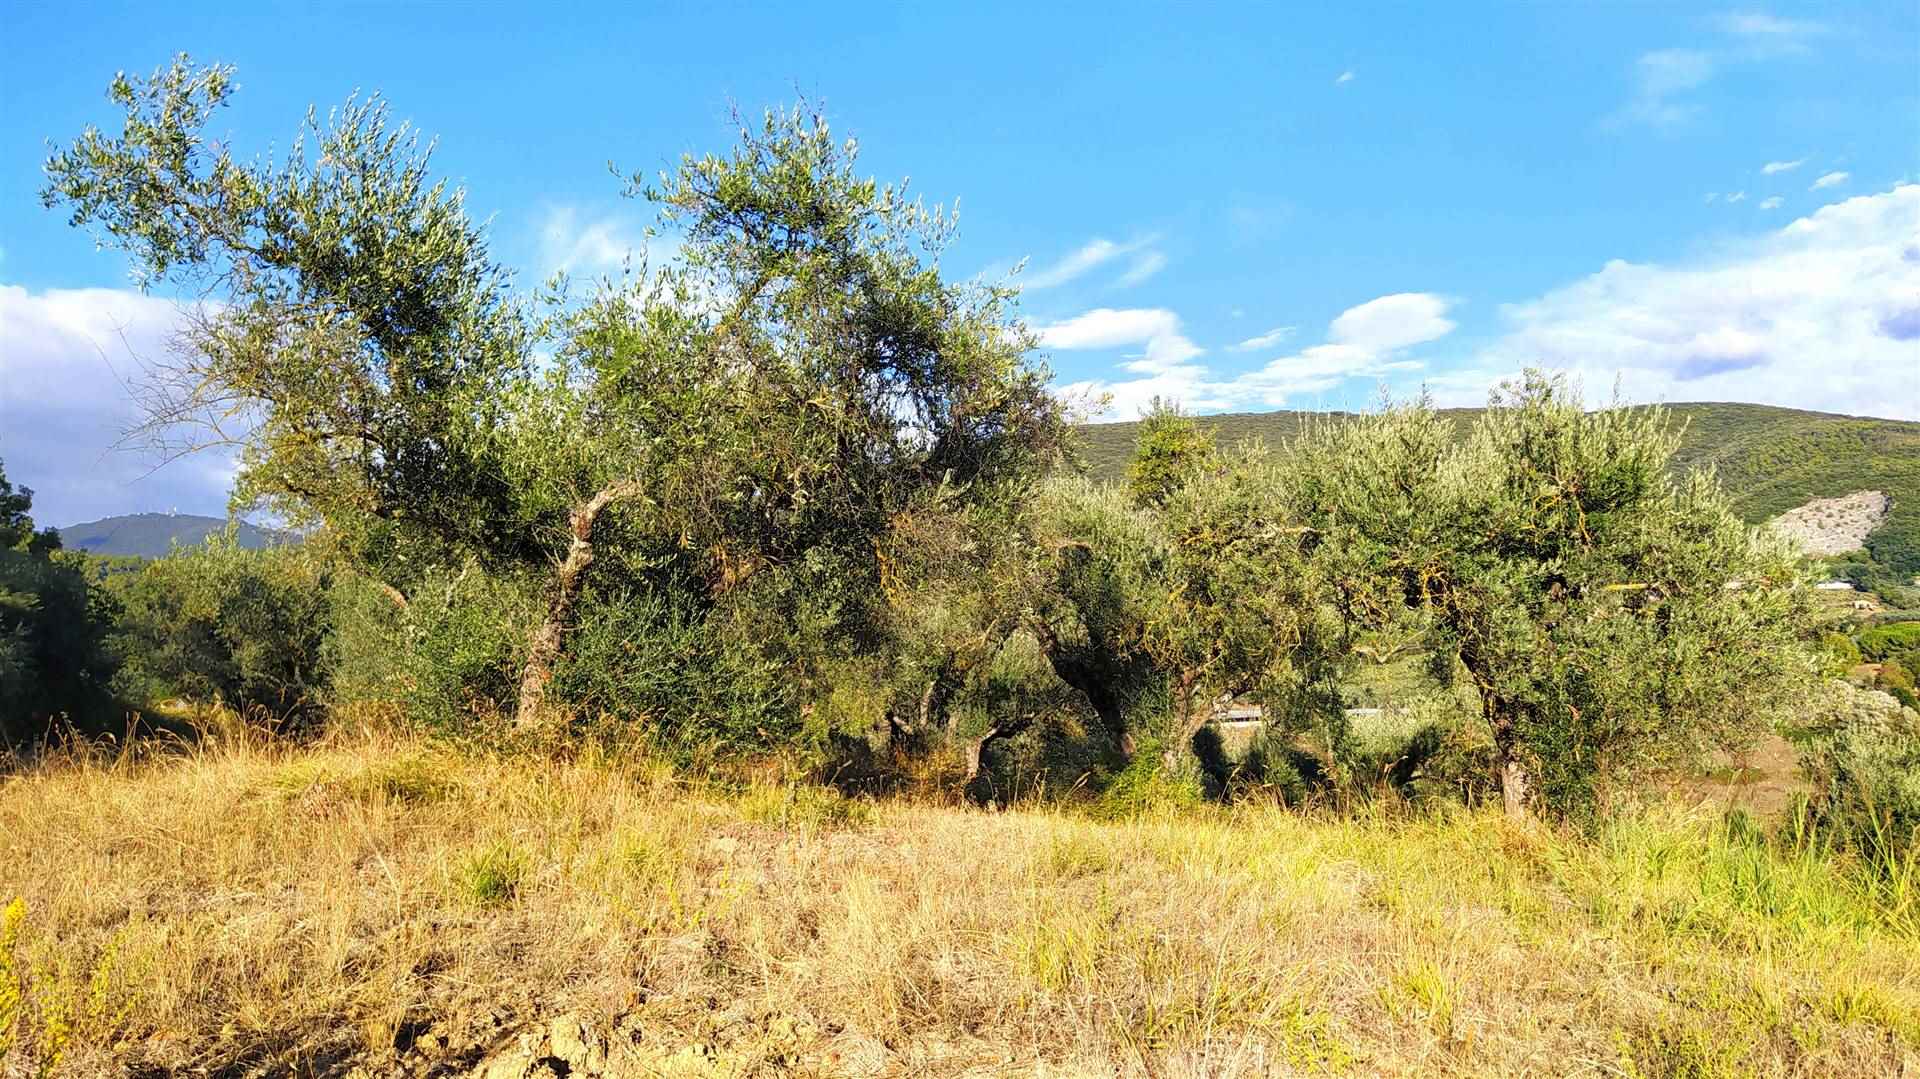 Terreno Agricolo in vendita a Montebuono, 9999 locali, zona Zona: Fianello, prezzo € 30.000 | CambioCasa.it